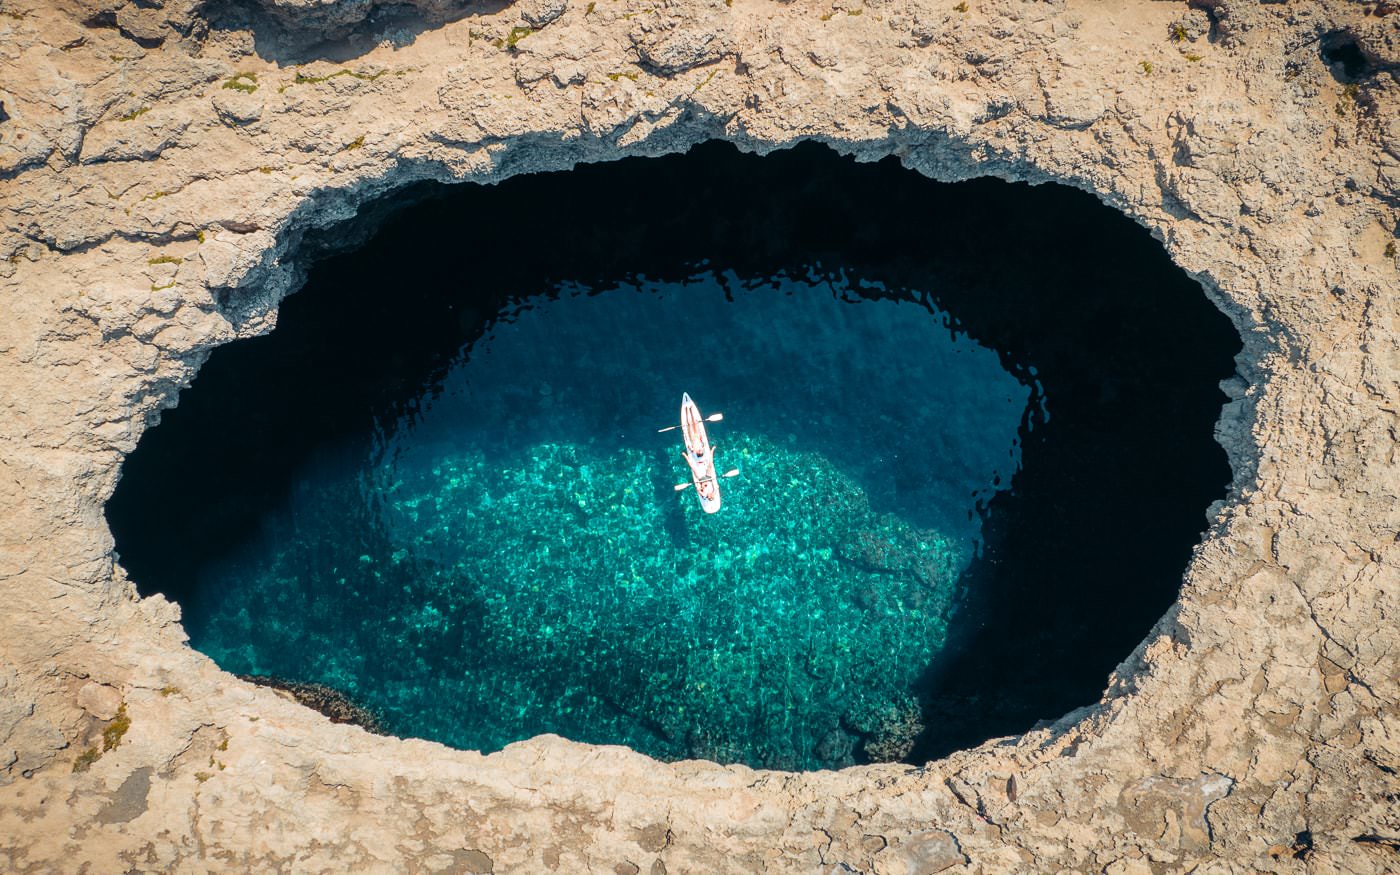 Coral Lagoon Malta – An Incredible Natural Sea Cave